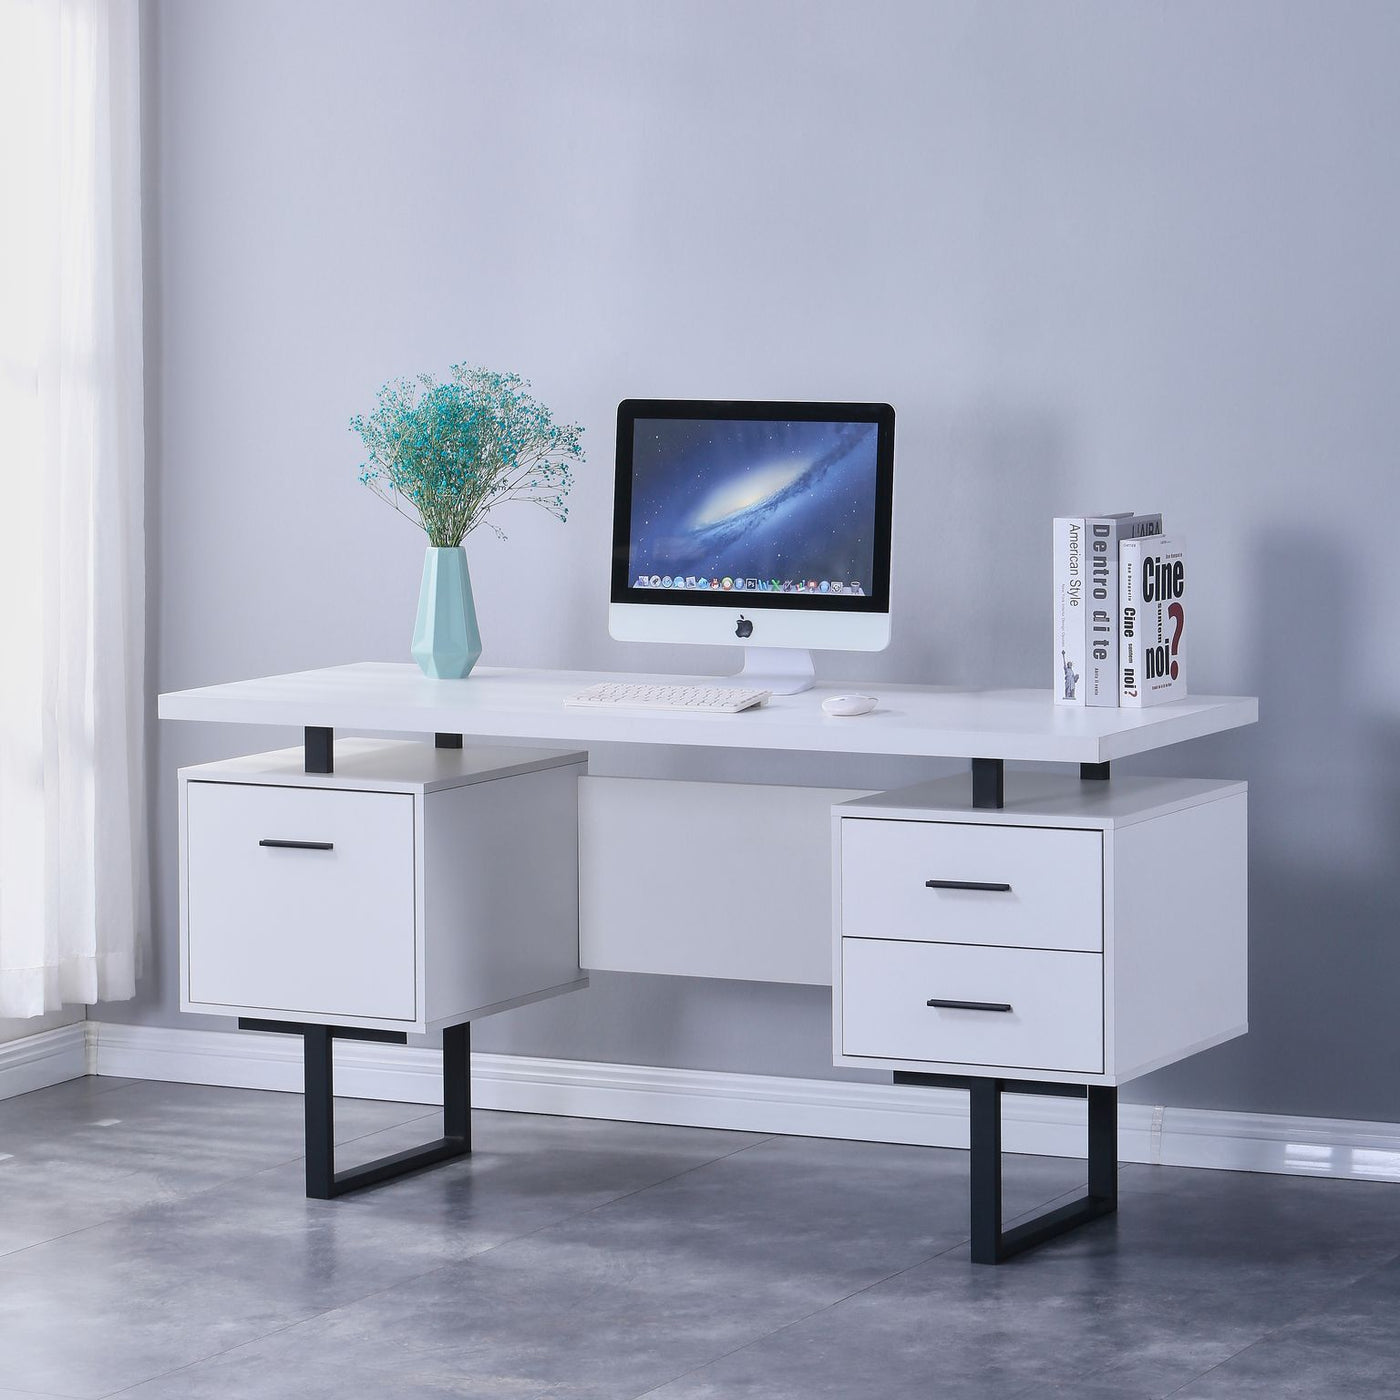 Alison Office Desk - White